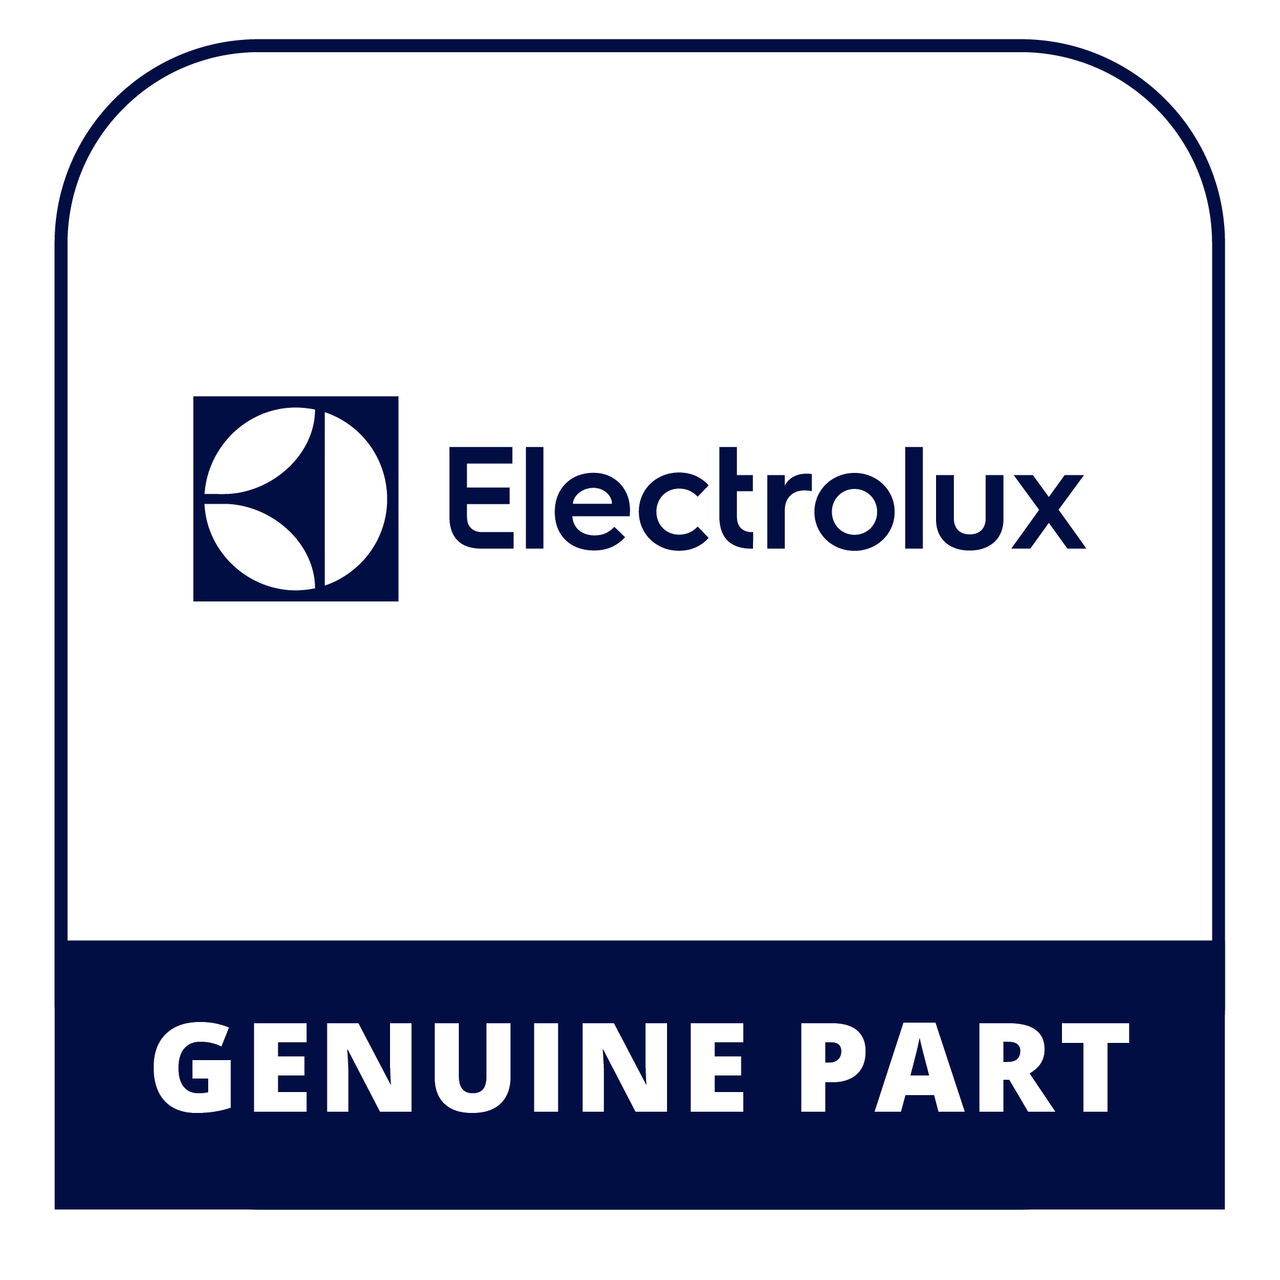 Frigidaire - Electrolux 316530101 - Switch - Genuine Electrolux Part